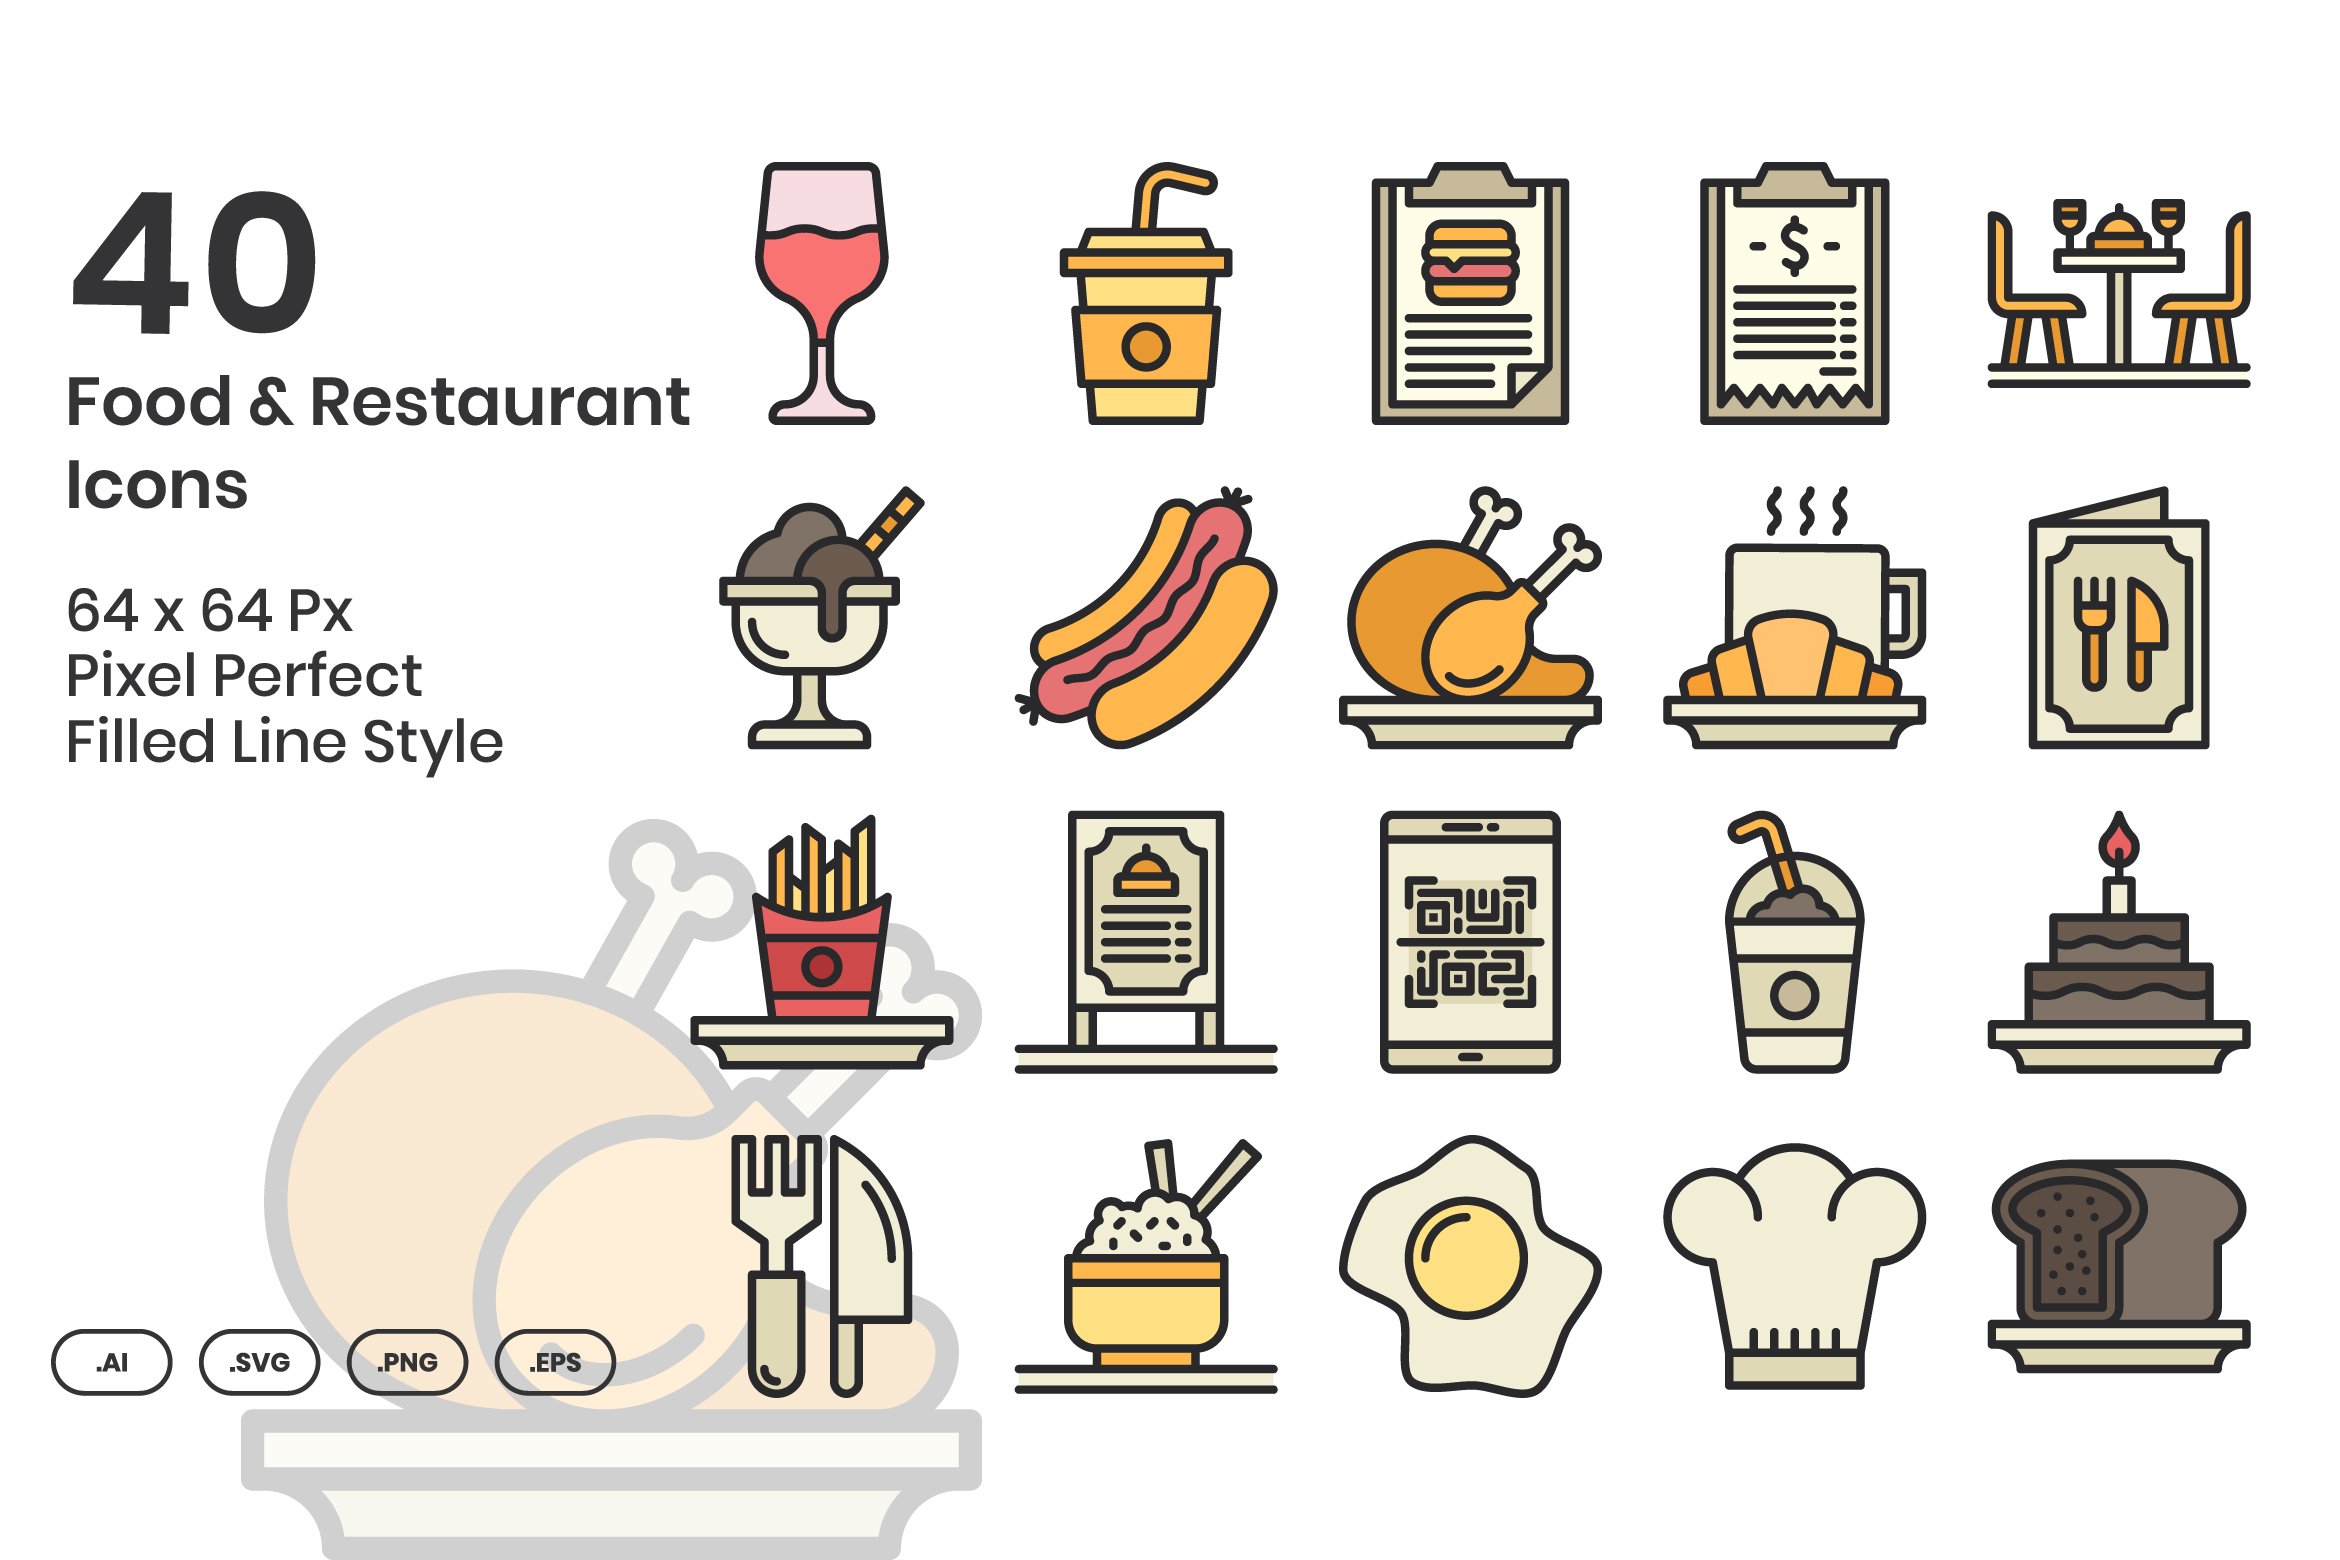 40 Food & Restaurant - Filled Line cover image.